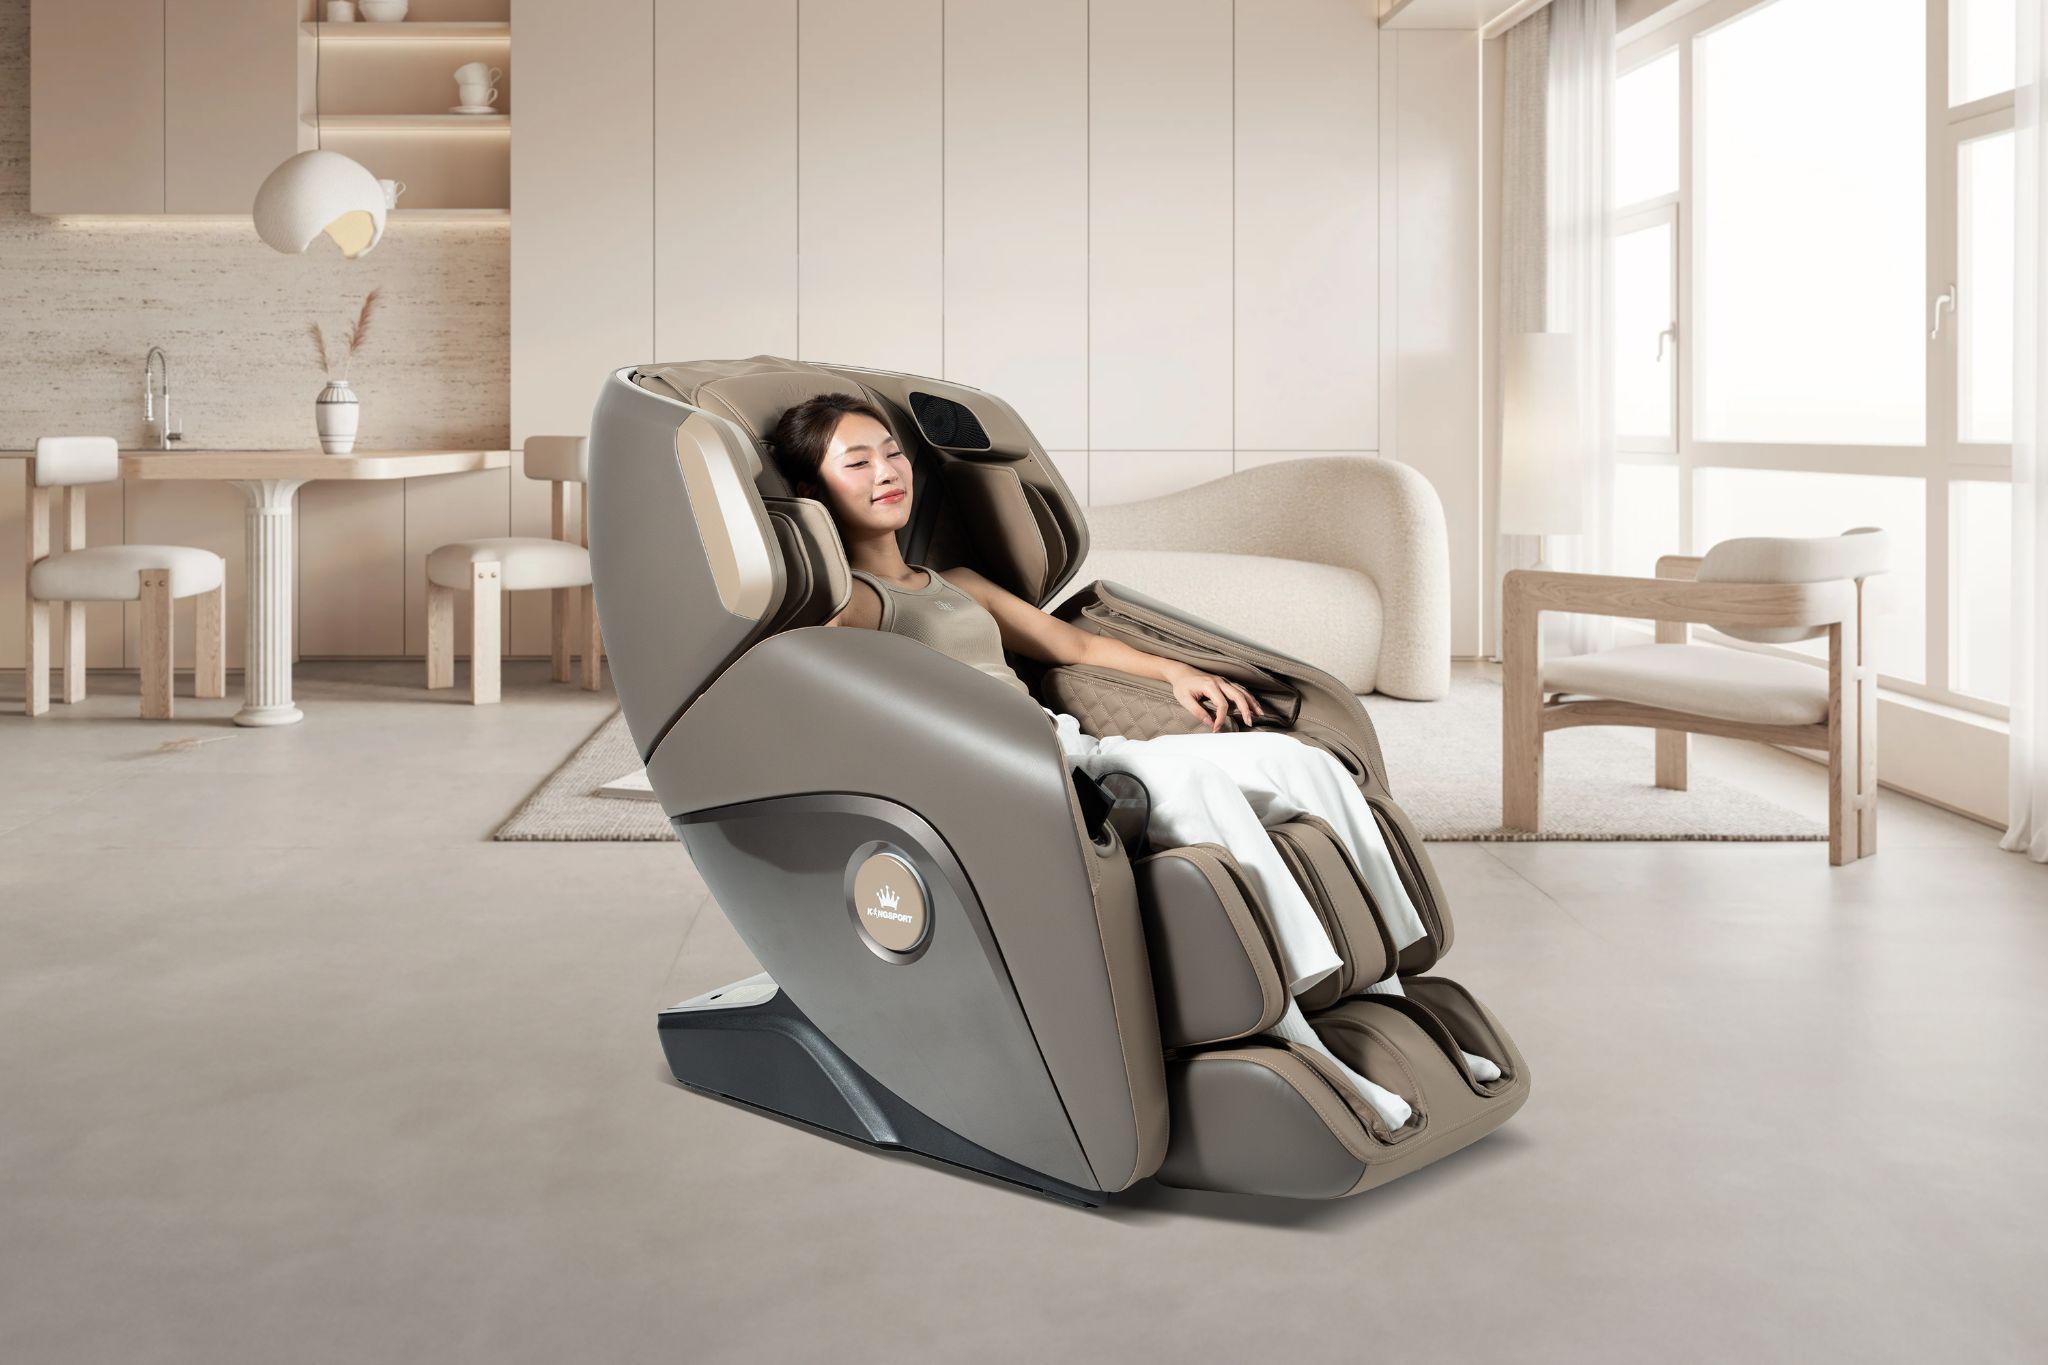 Khánh Vy chọn ghế massage KingSport Deluxe G50 New để tái tạo năng lượng tích cực